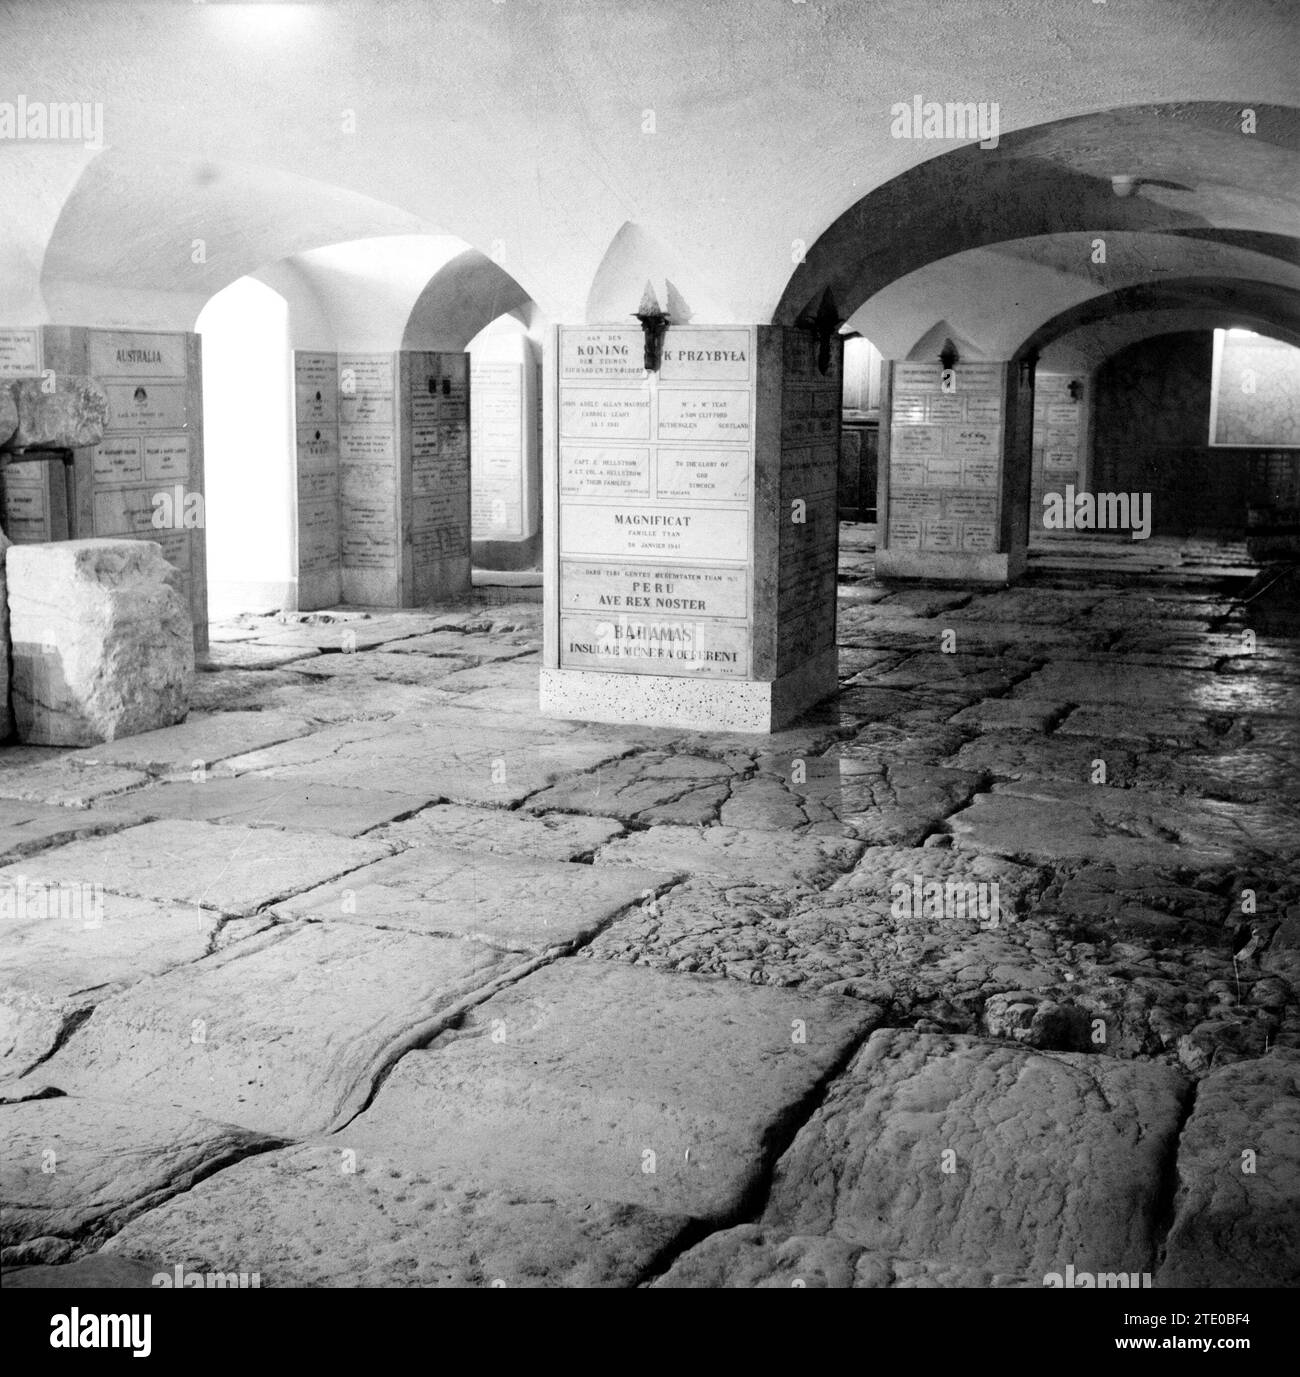 Cantina Lithostrotos contenente la pavimentazione originale che avrebbe coperto la "via dolorosa" al tempo della crocifissione di Gesù. Seconda stazione circa 1950-1955 Foto Stock